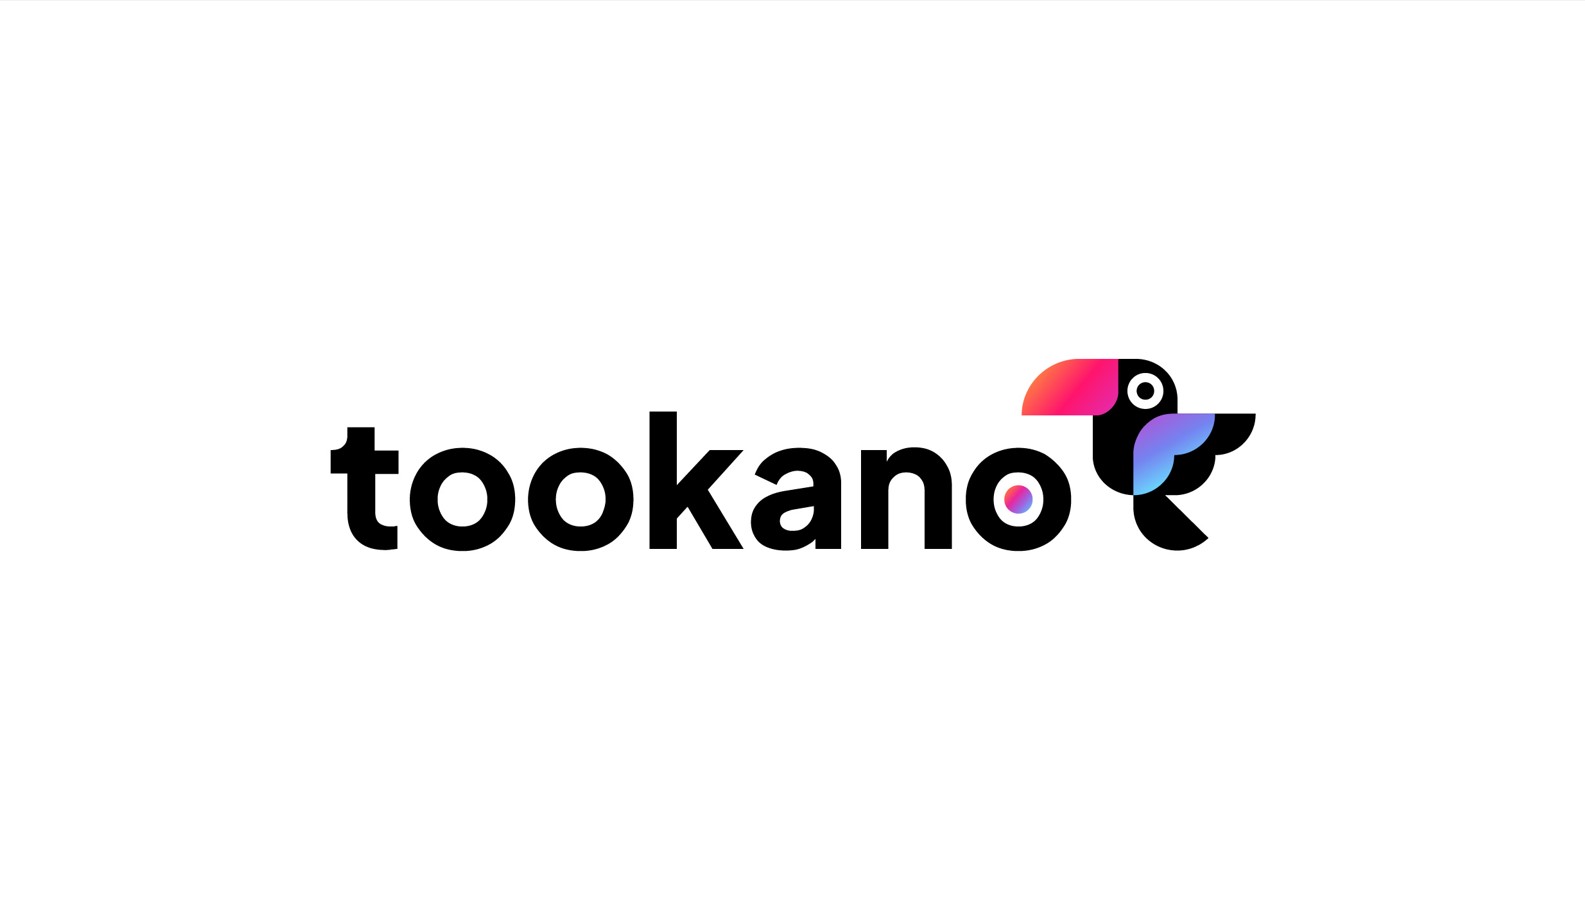 Tookano